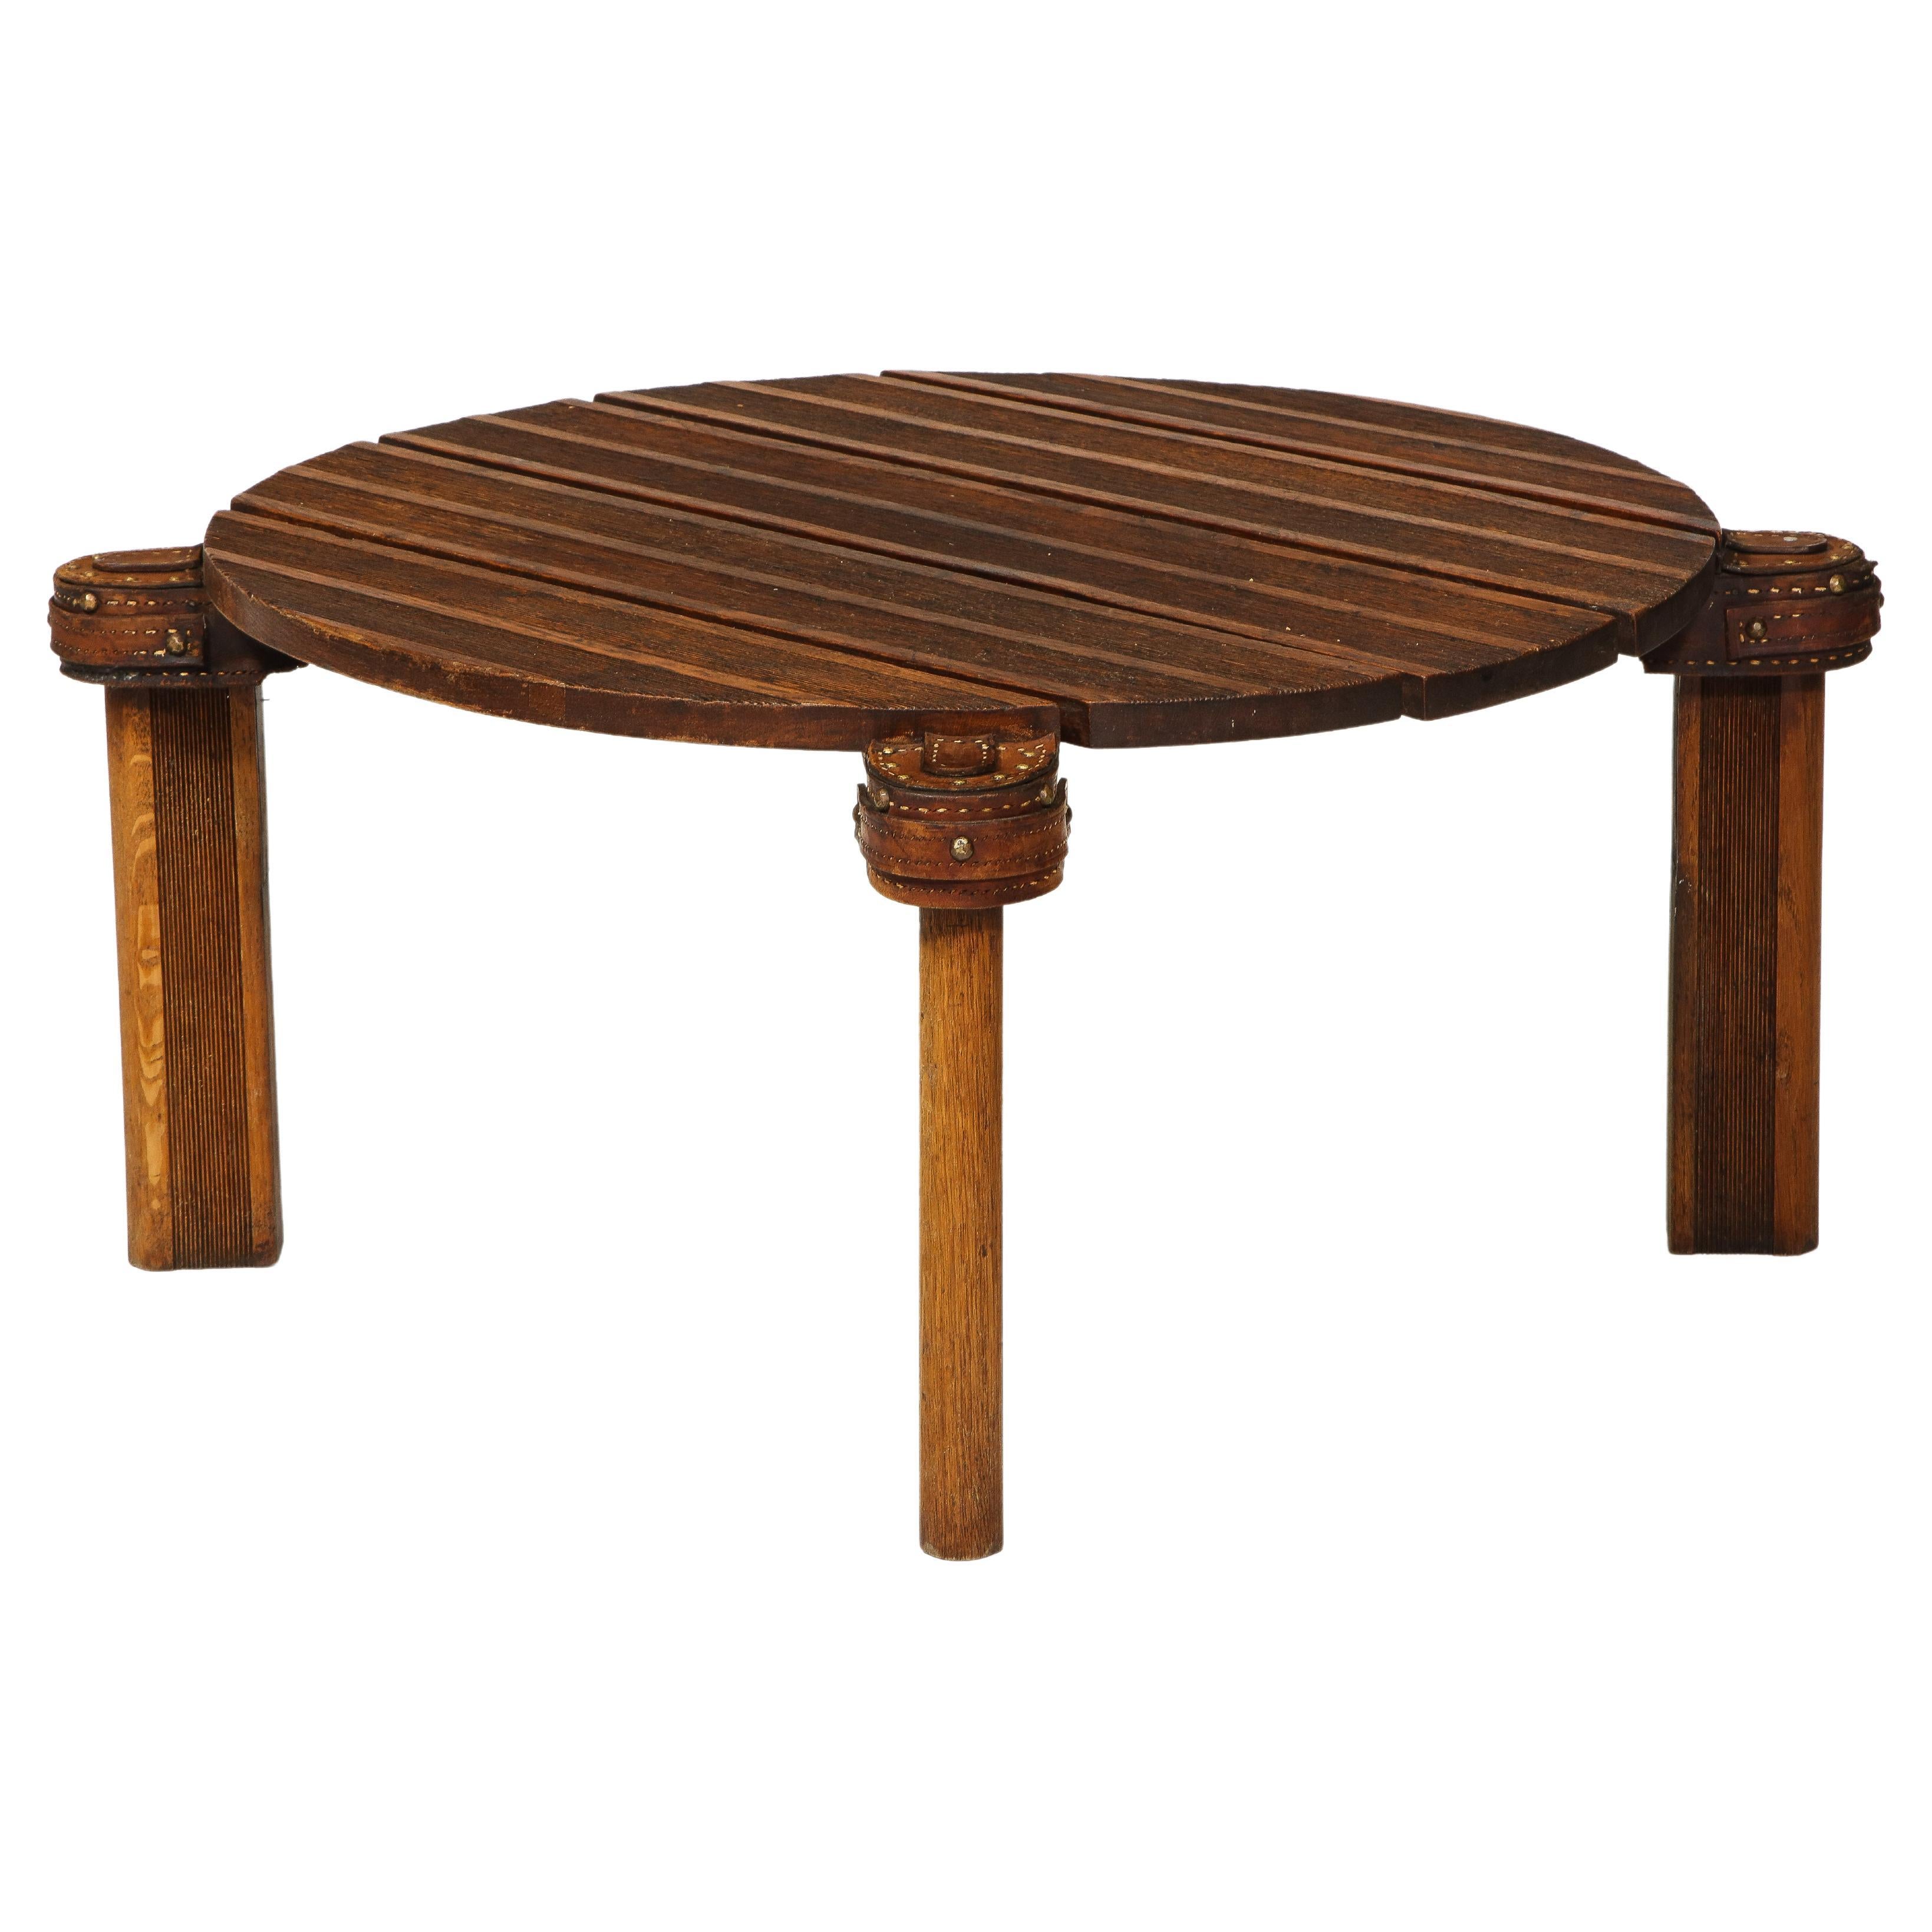 Table basse ronde en chêne et cuir de Jacques Adnet, France, c. Milieu du 20e siècle